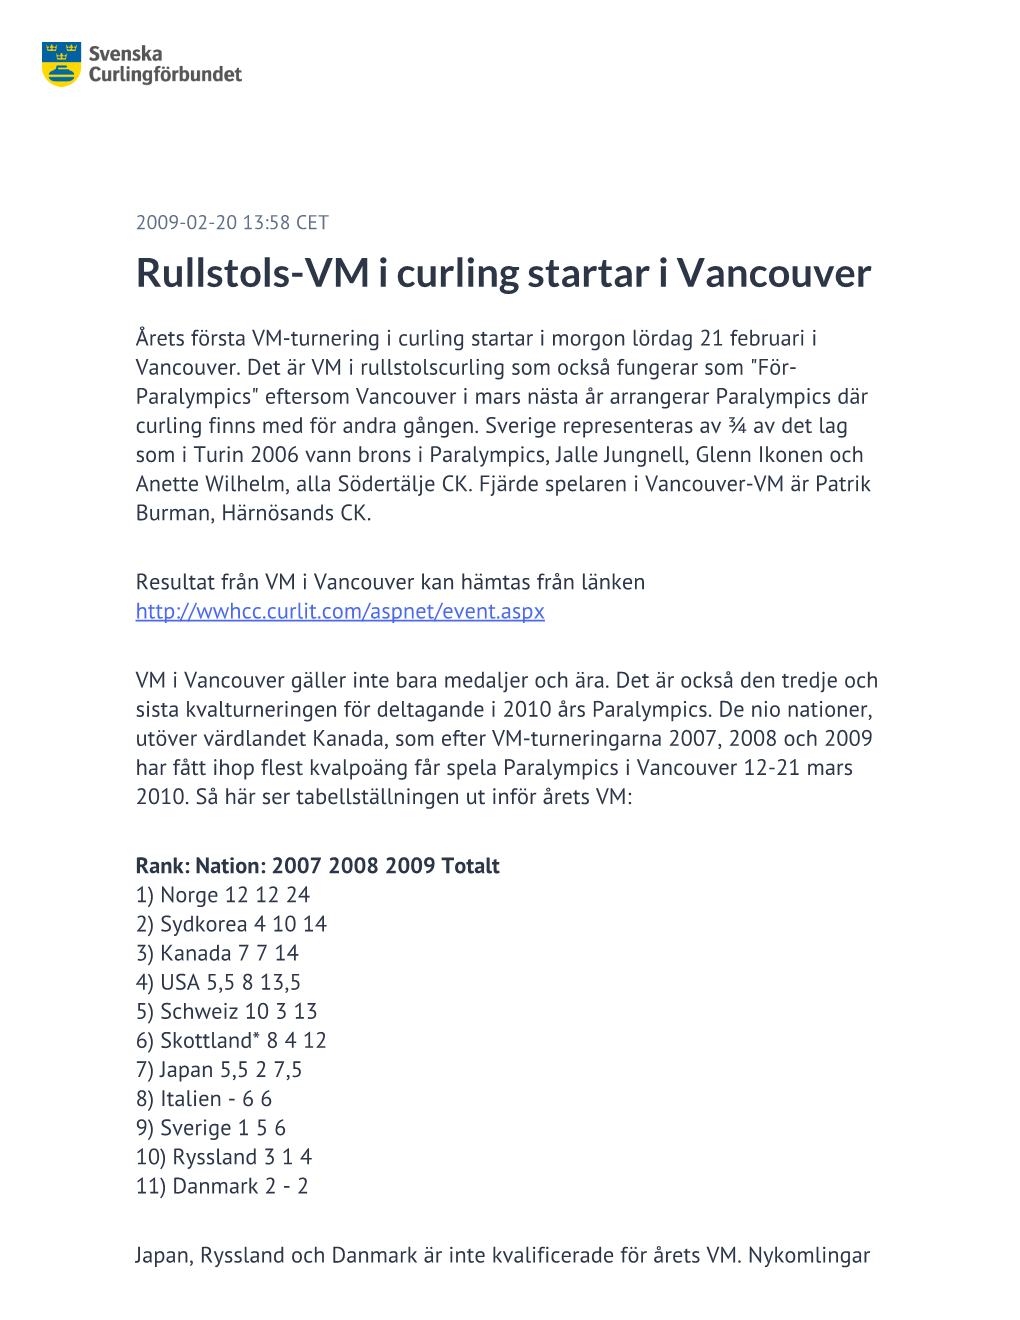 Rullstols-VM I Curling Startar I Vancouver